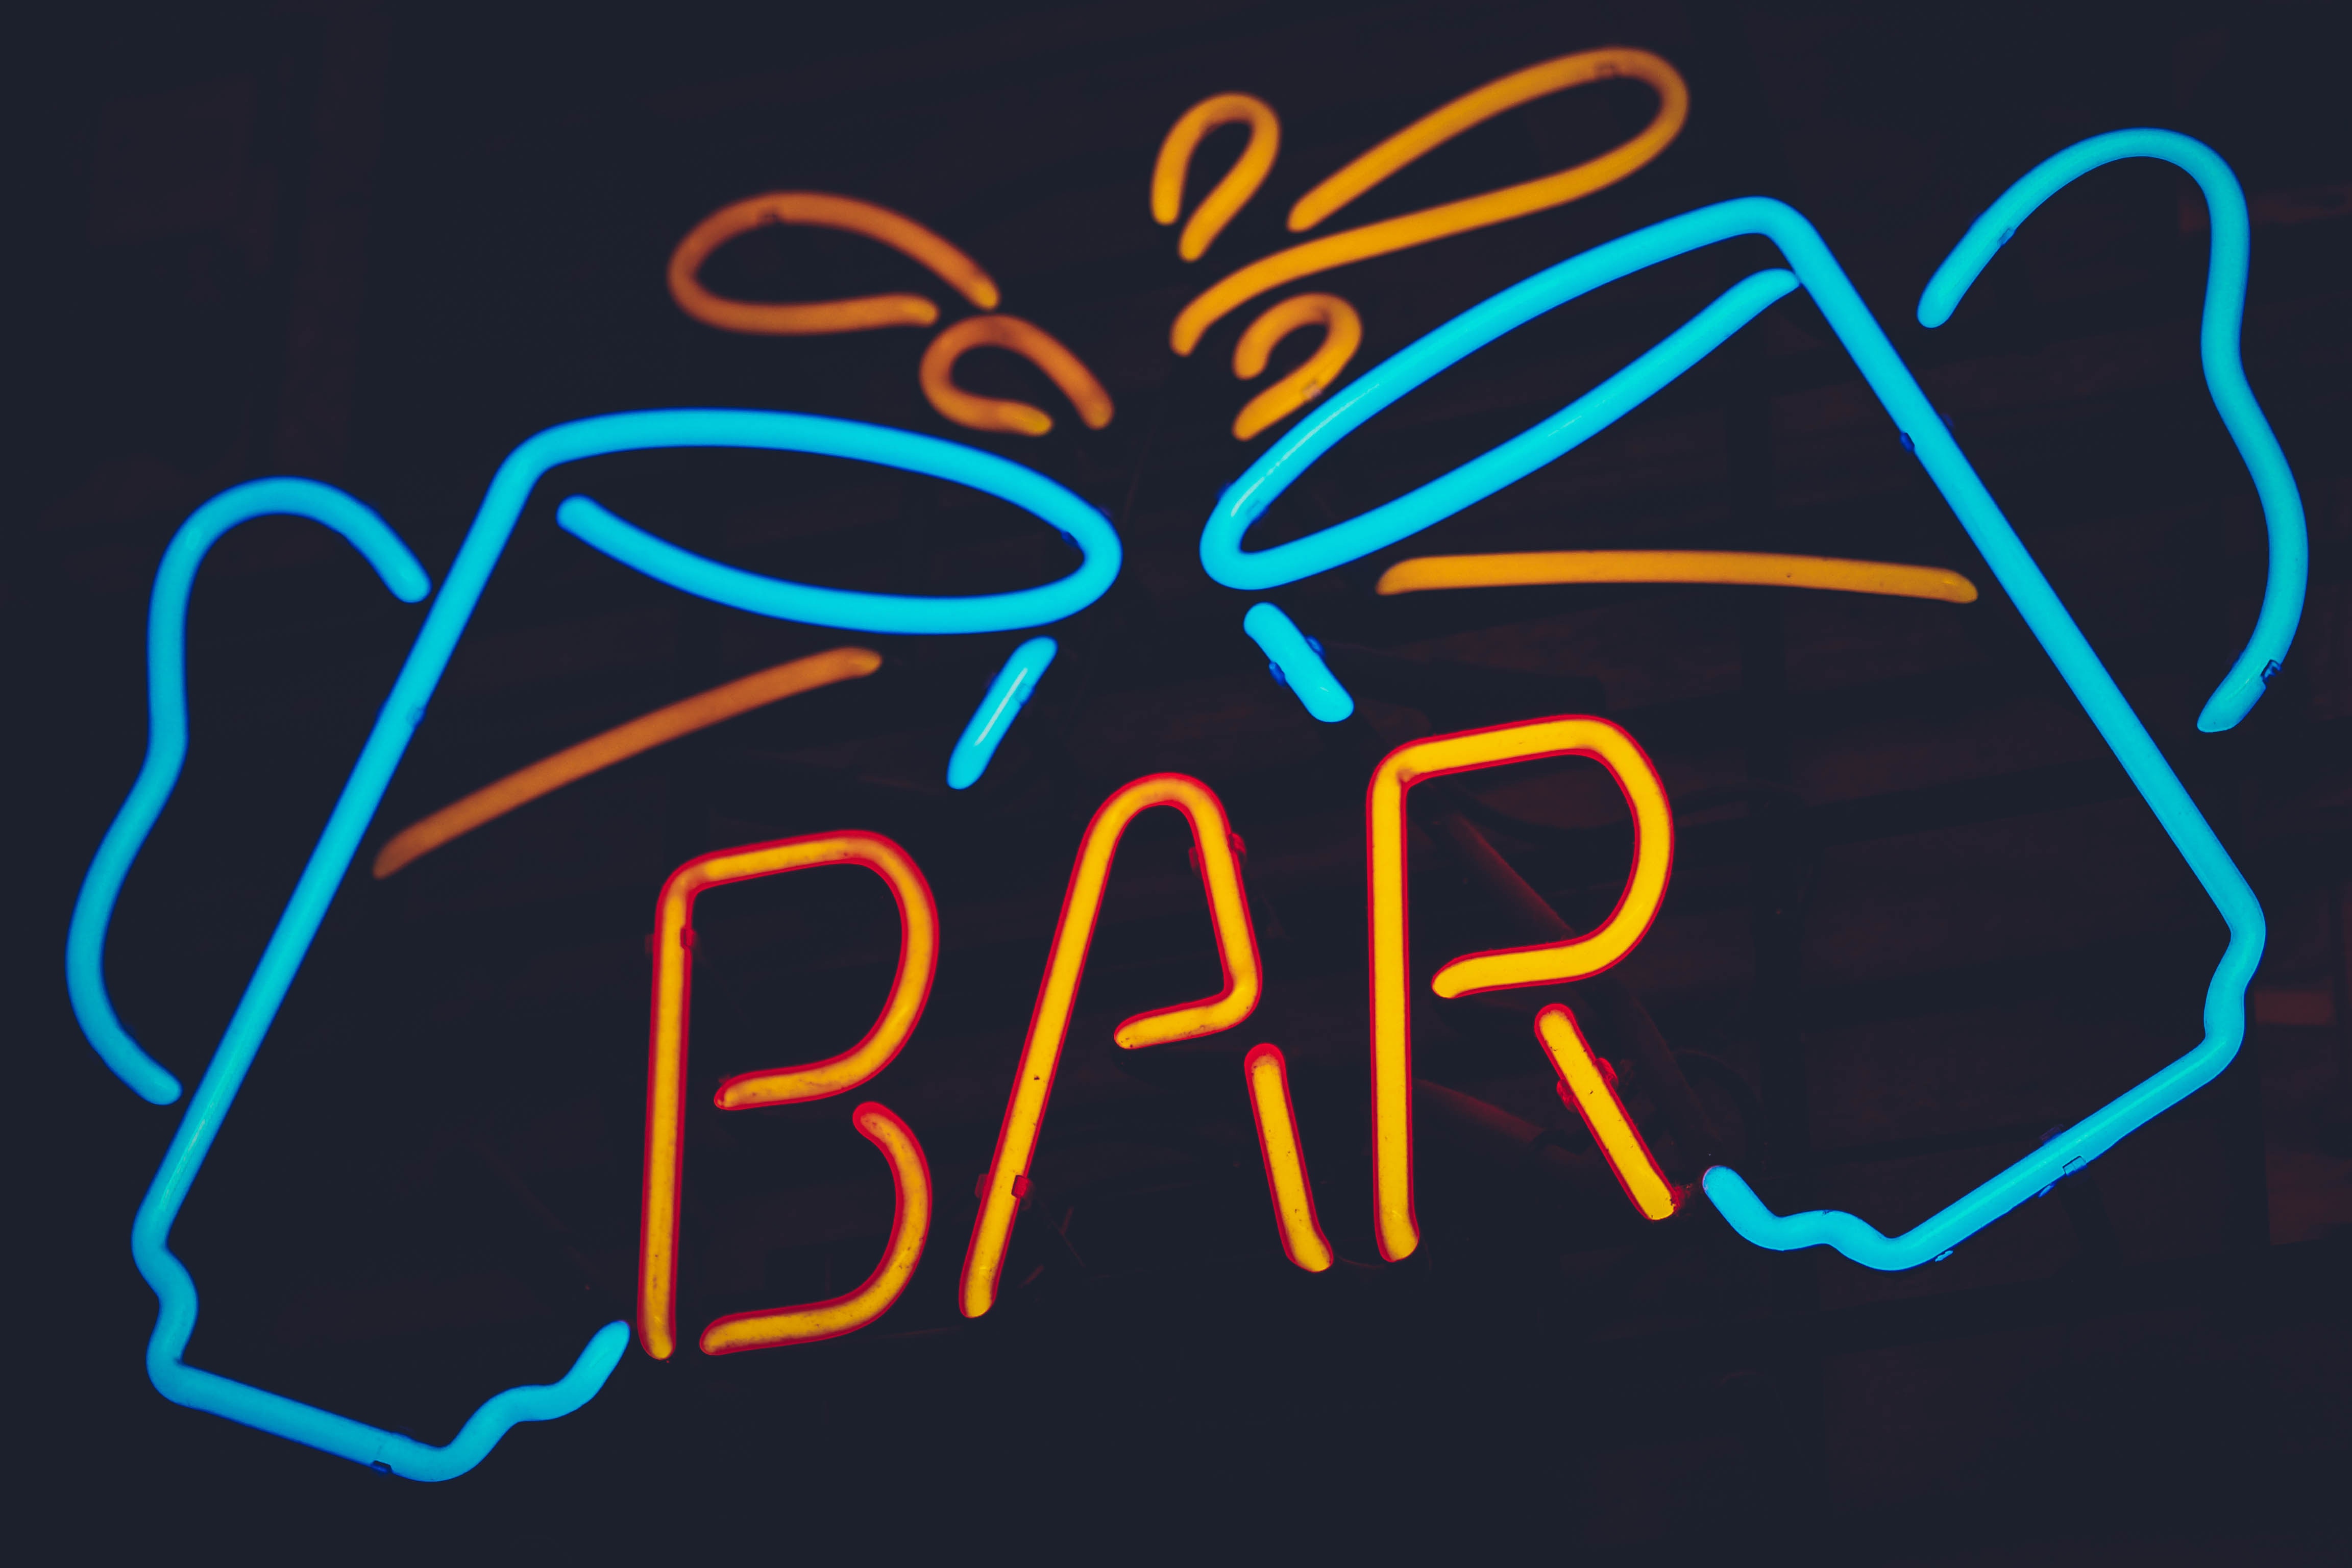 Bar neon sign